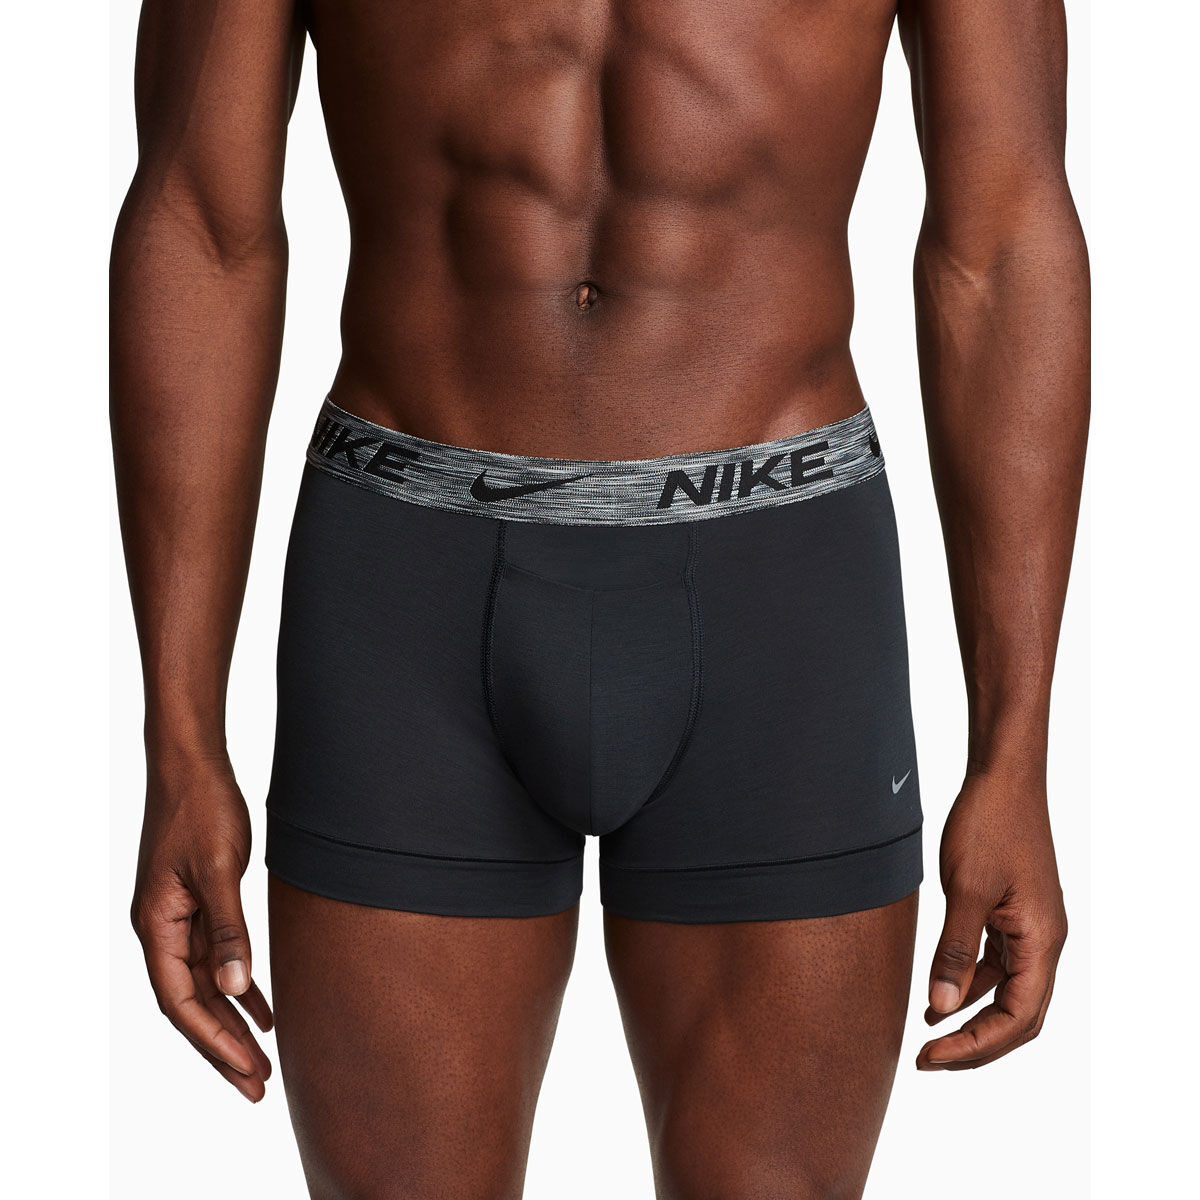 Trainer's Got Balls - Black Boxer Brief Underwear